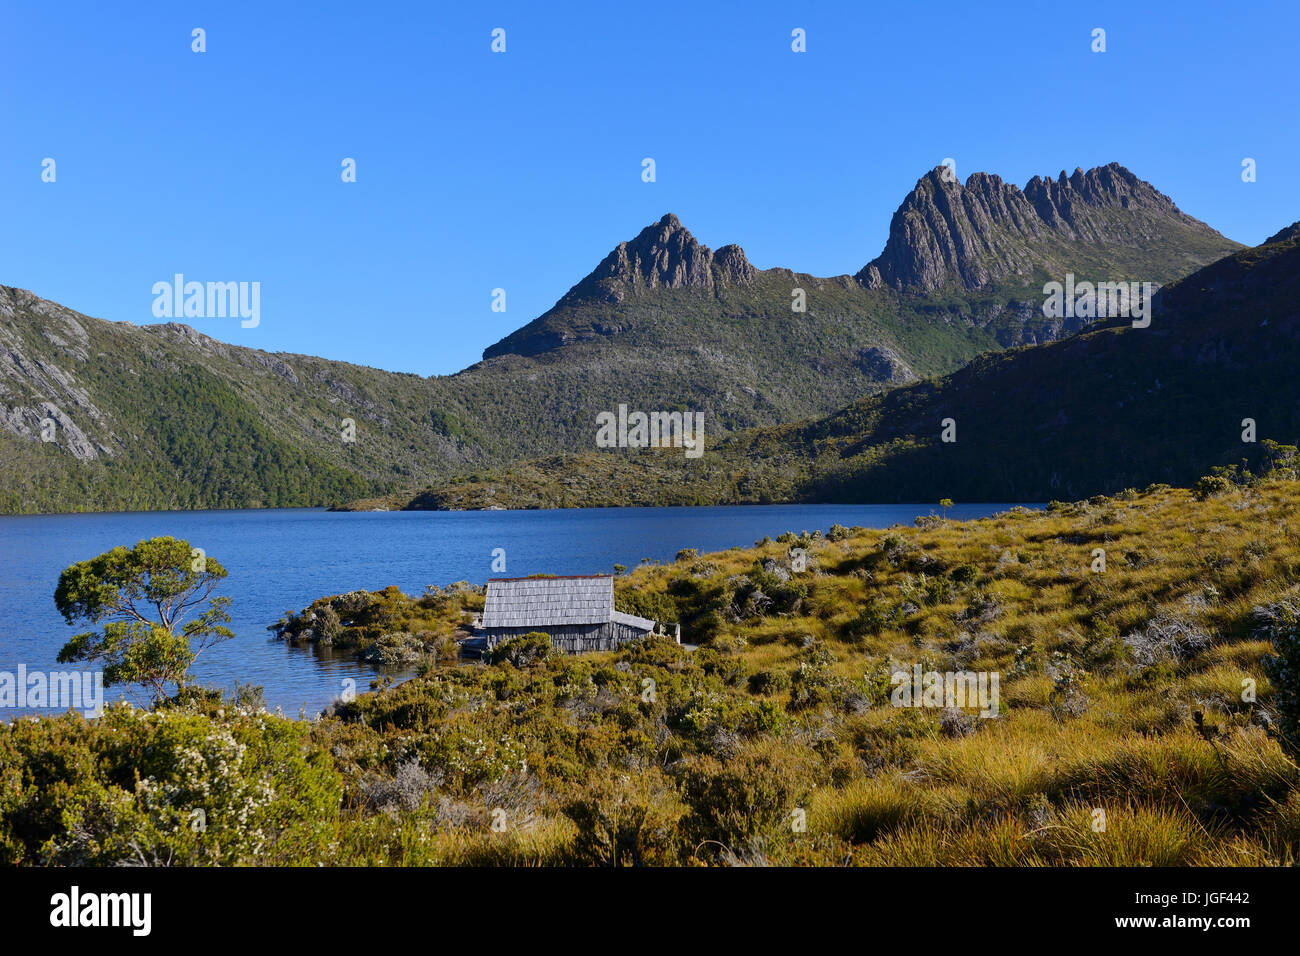 Boat house on Dove Lake, Cradle Mountain-Lake St Clair National Park, Tasmania, Australia Stock Photo